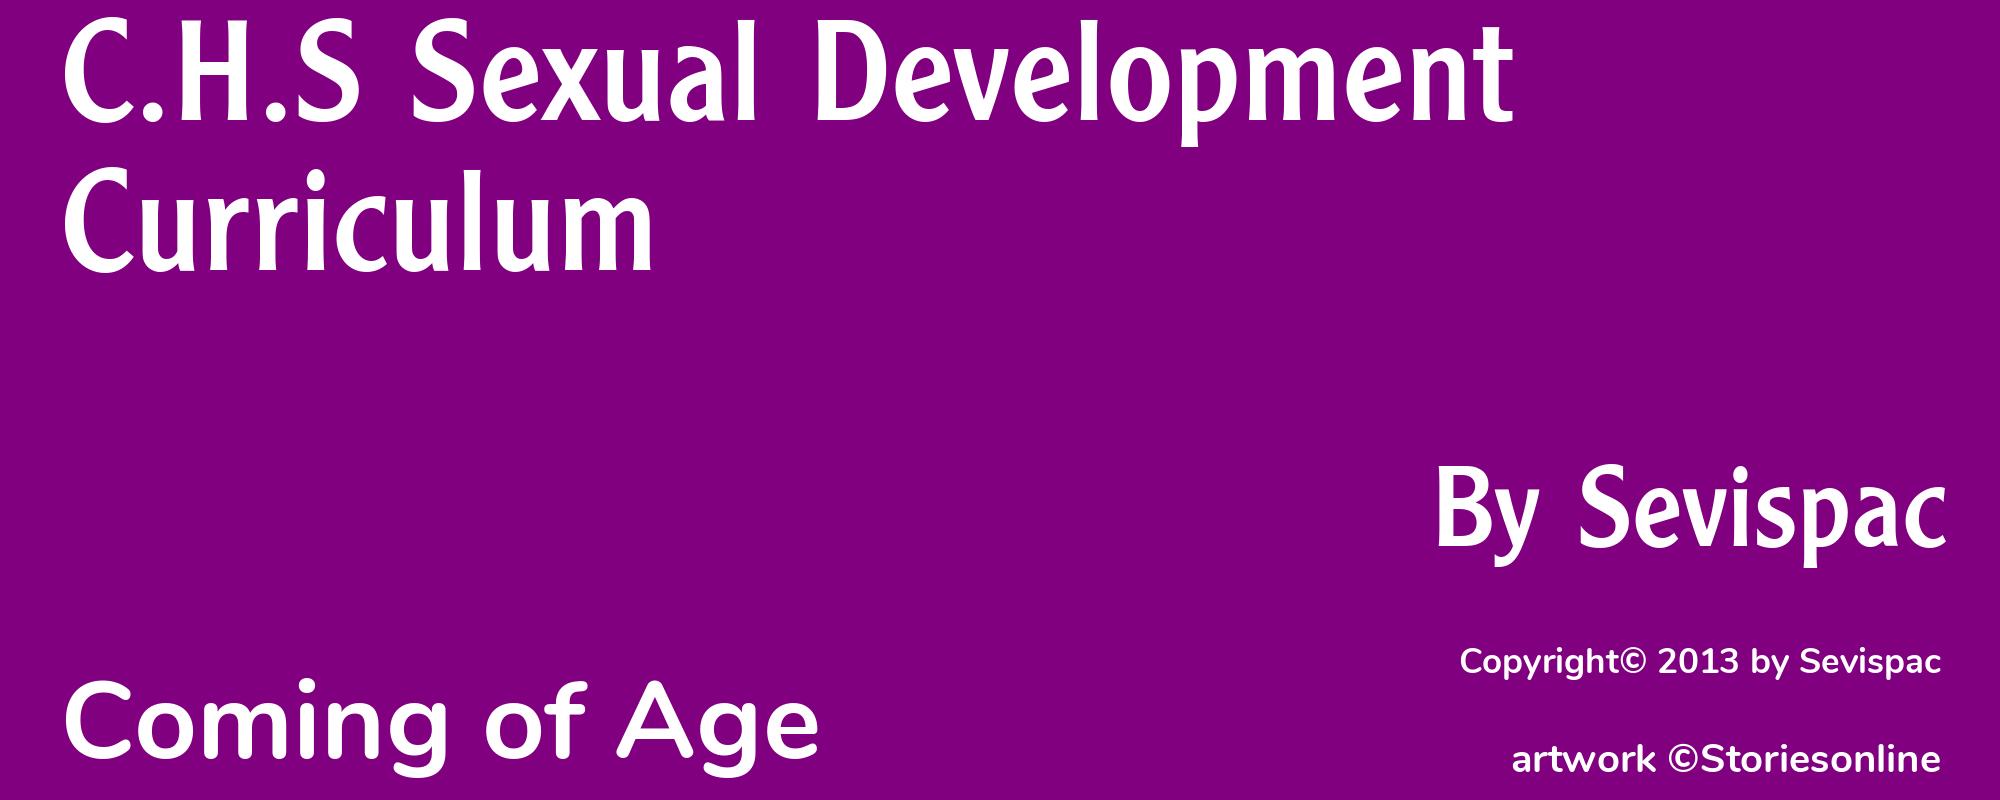 C.H.S Sexual Development Curriculum - Cover